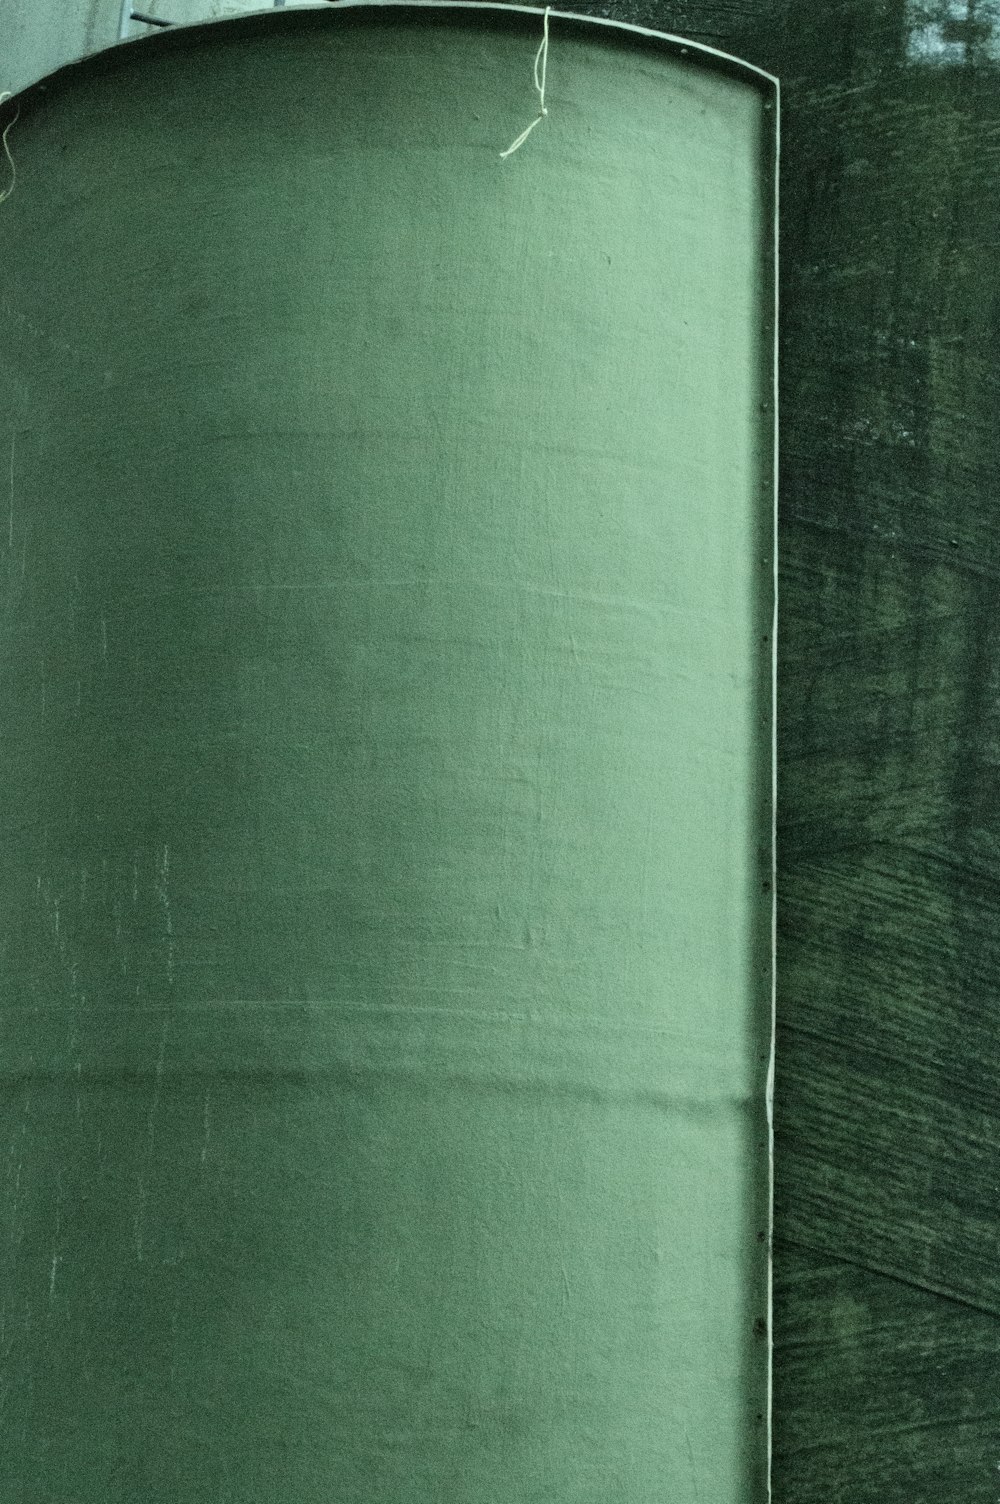 têxtil verde na mesa de madeira marrom